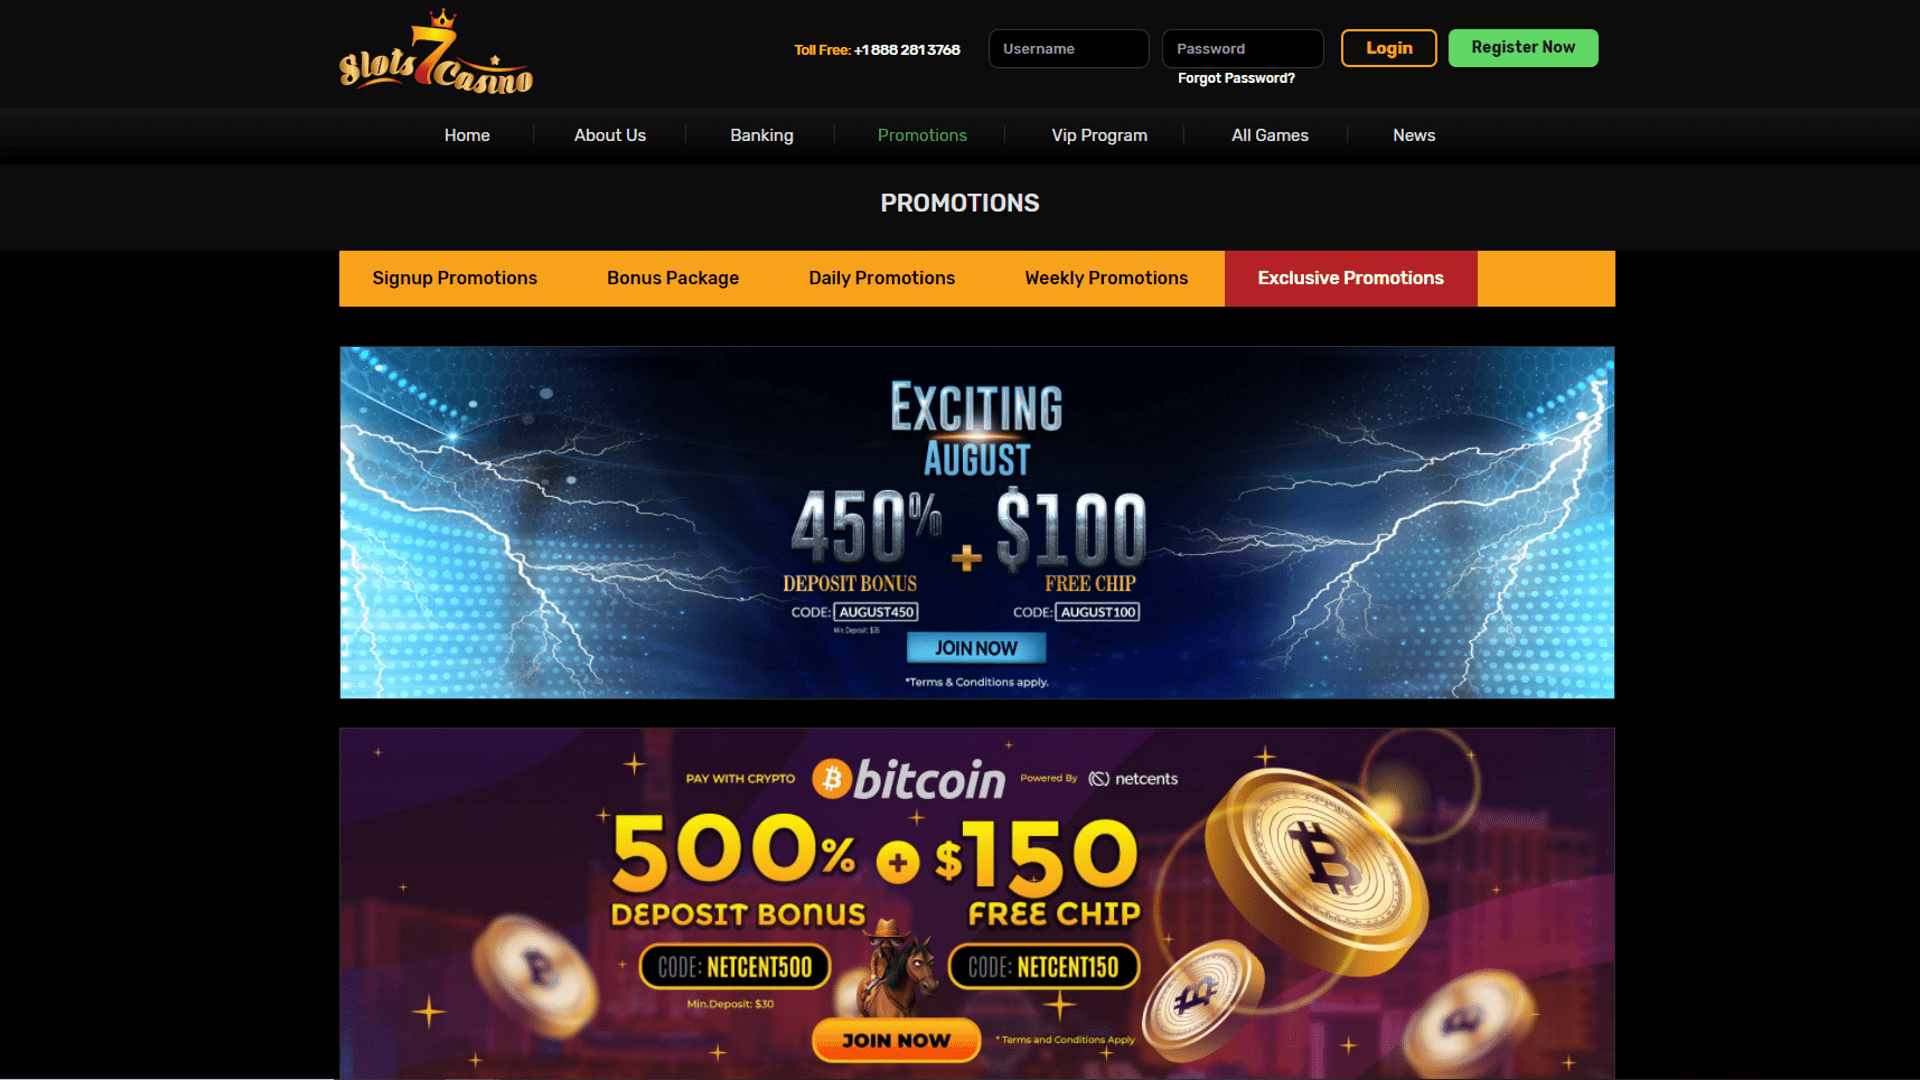 parx online casino no deposit bonus 2021